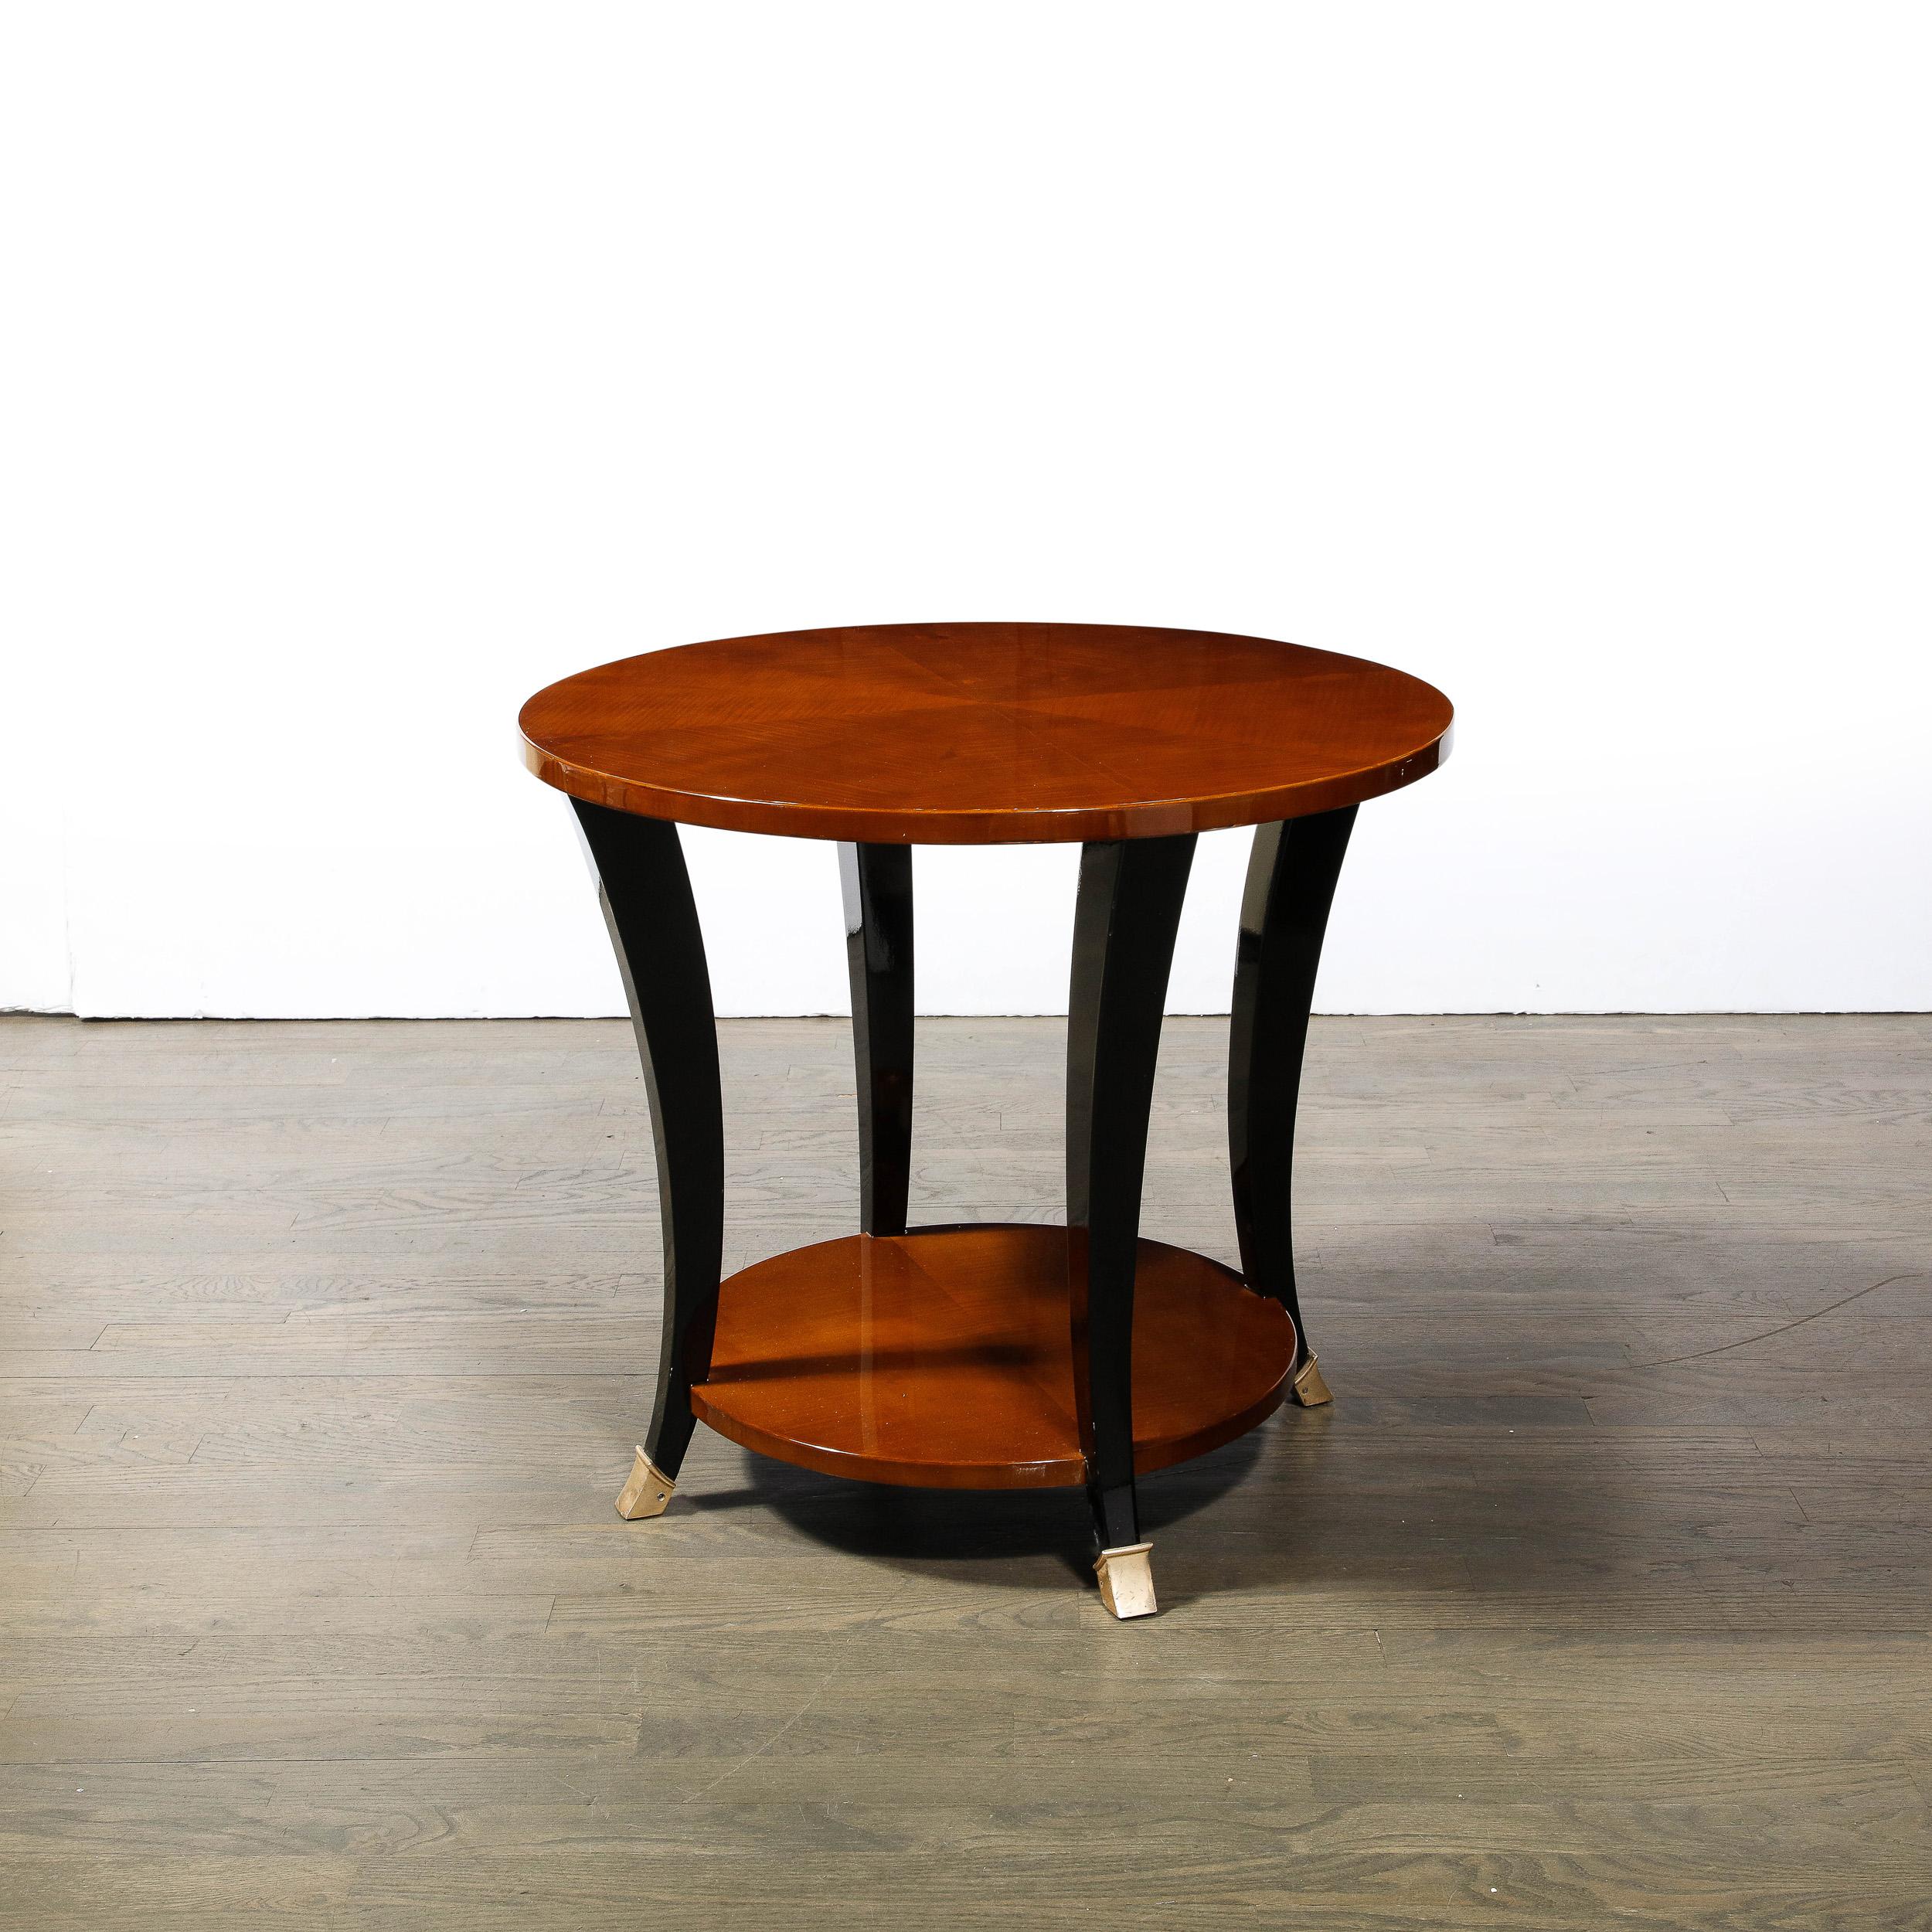 Cette magnifique table à deux étages de style Art Déco, de style NOGE, a été réalisée en France vers 1935. Elle offre deux plateaux circulaires en noyer assorti (mettant en valeur la riche beauté naturelle des veines du bois) reliés par des supports